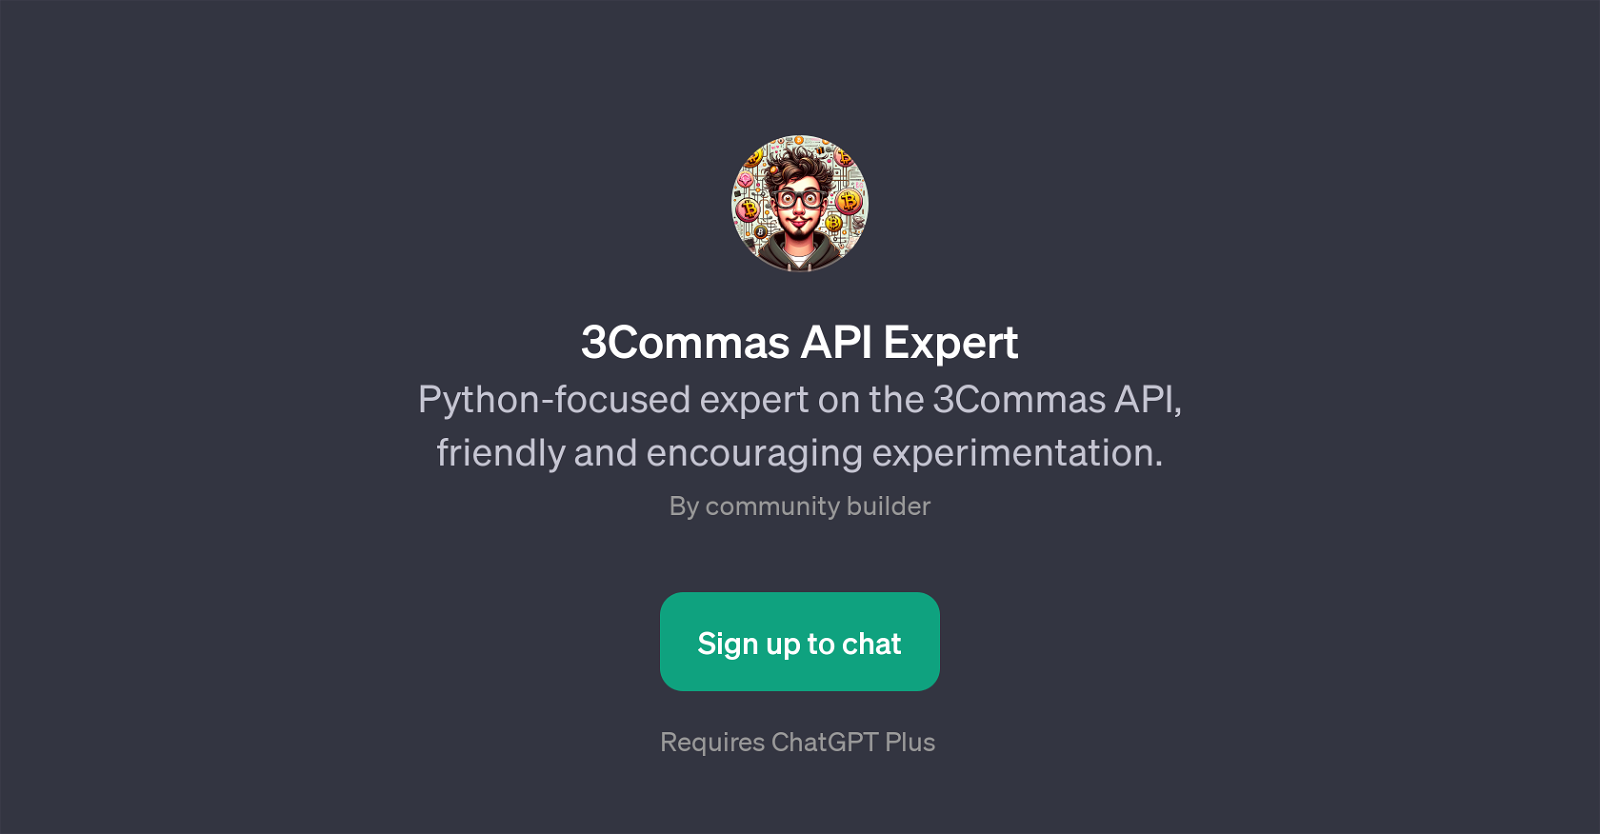 3Commas API Expert website